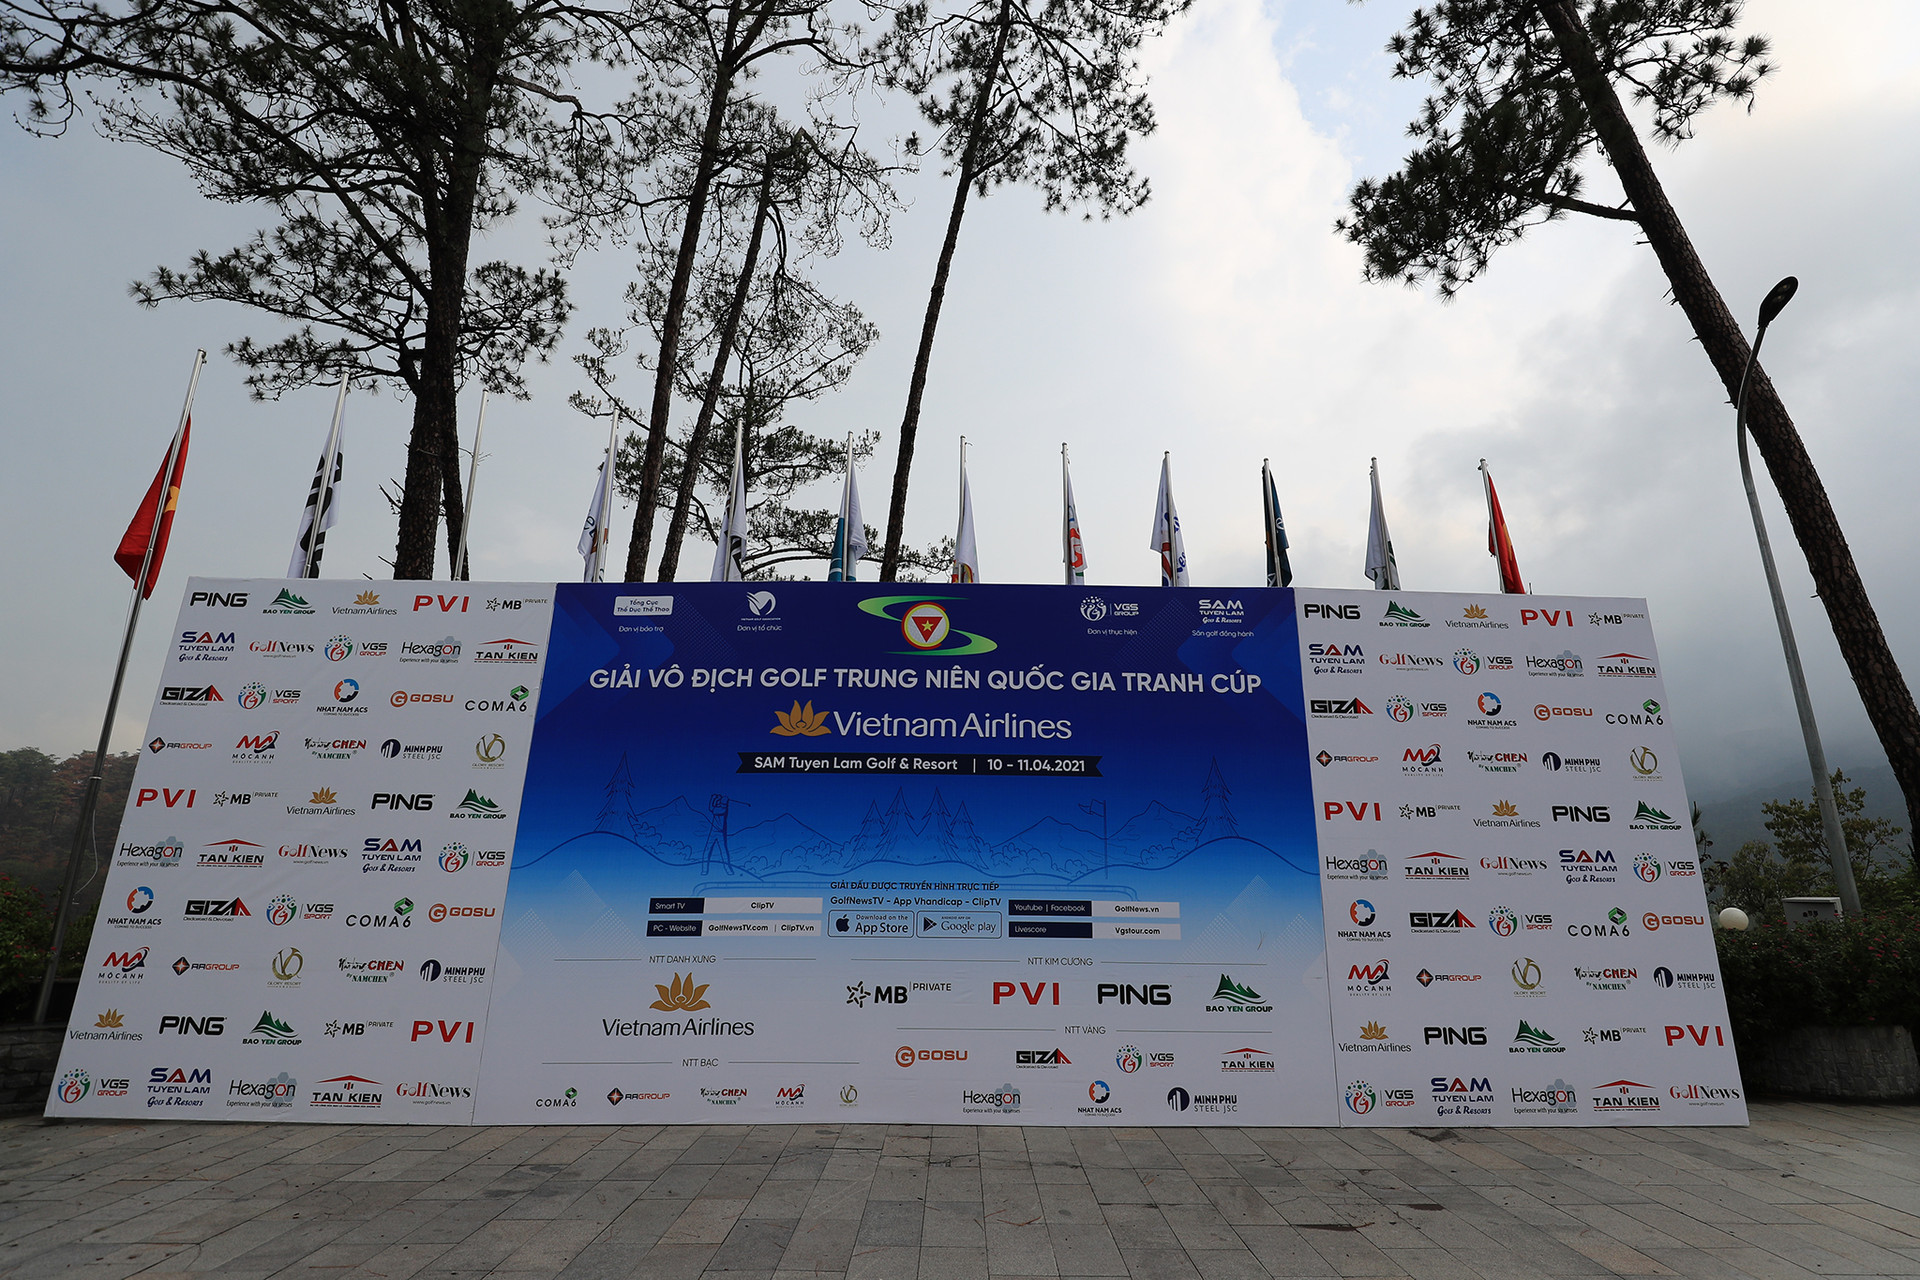 Cơ cấu giải thưởng của giải Vô địch golf Trung niên Quốc gia 2021 tranh cúp Vietnam Airlines - Ảnh 1.